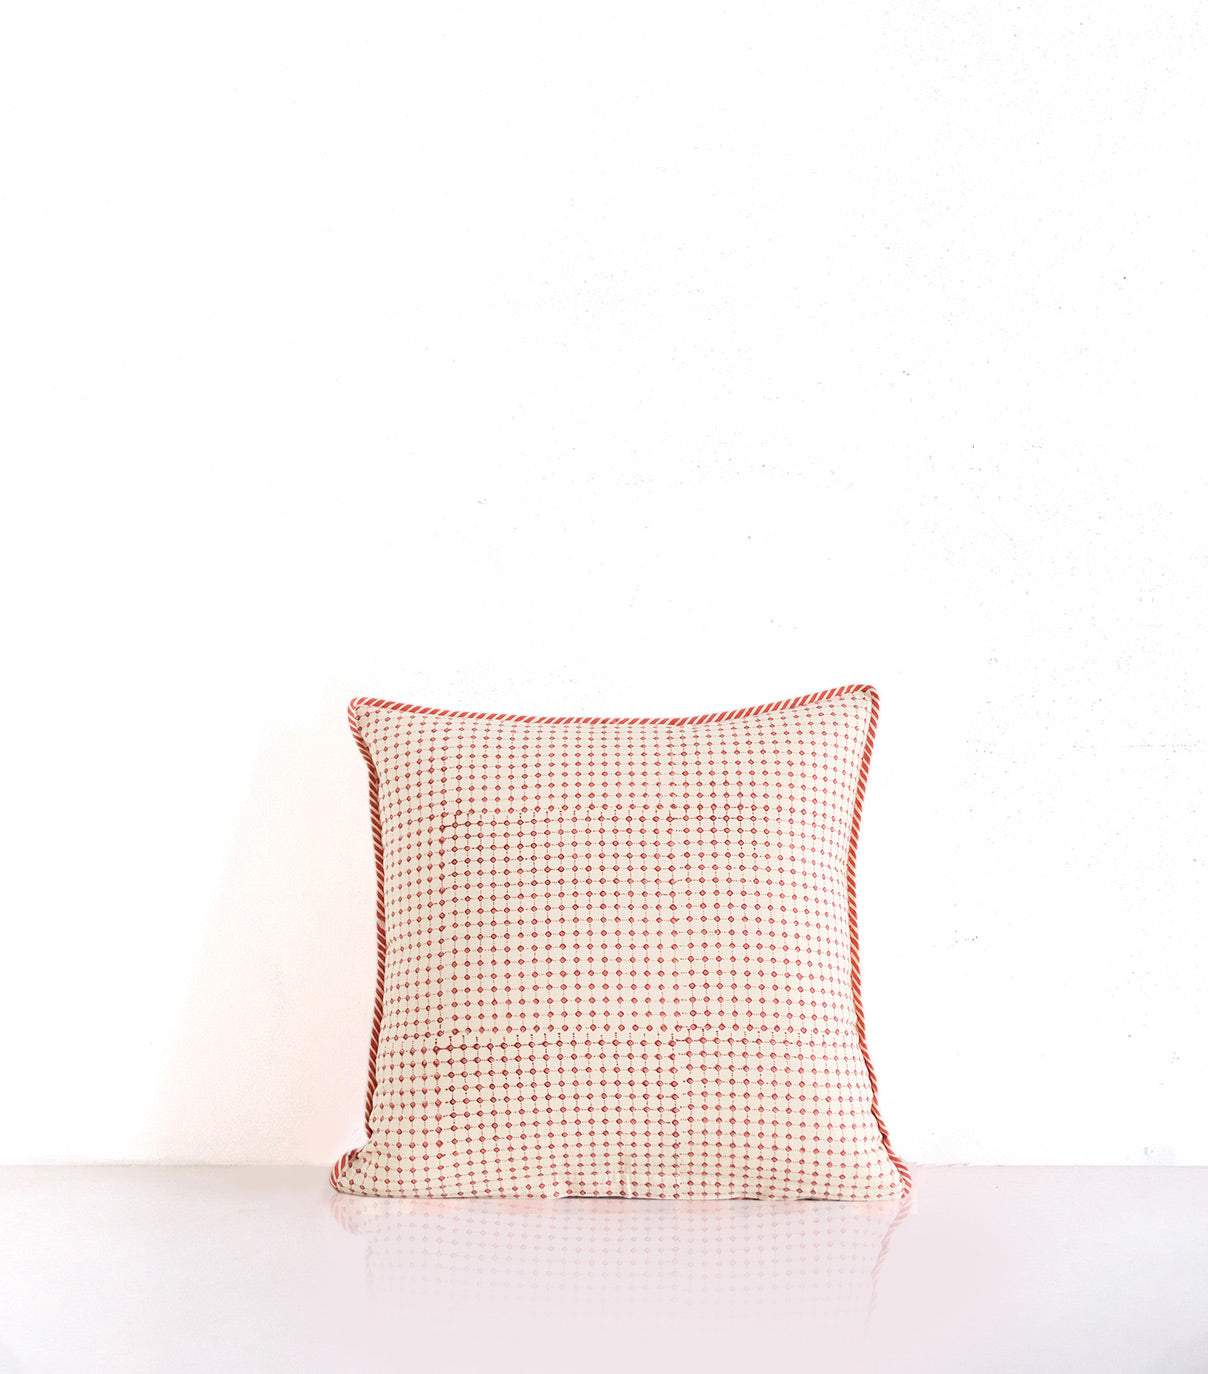 Jaipur rose block printed cushion cover